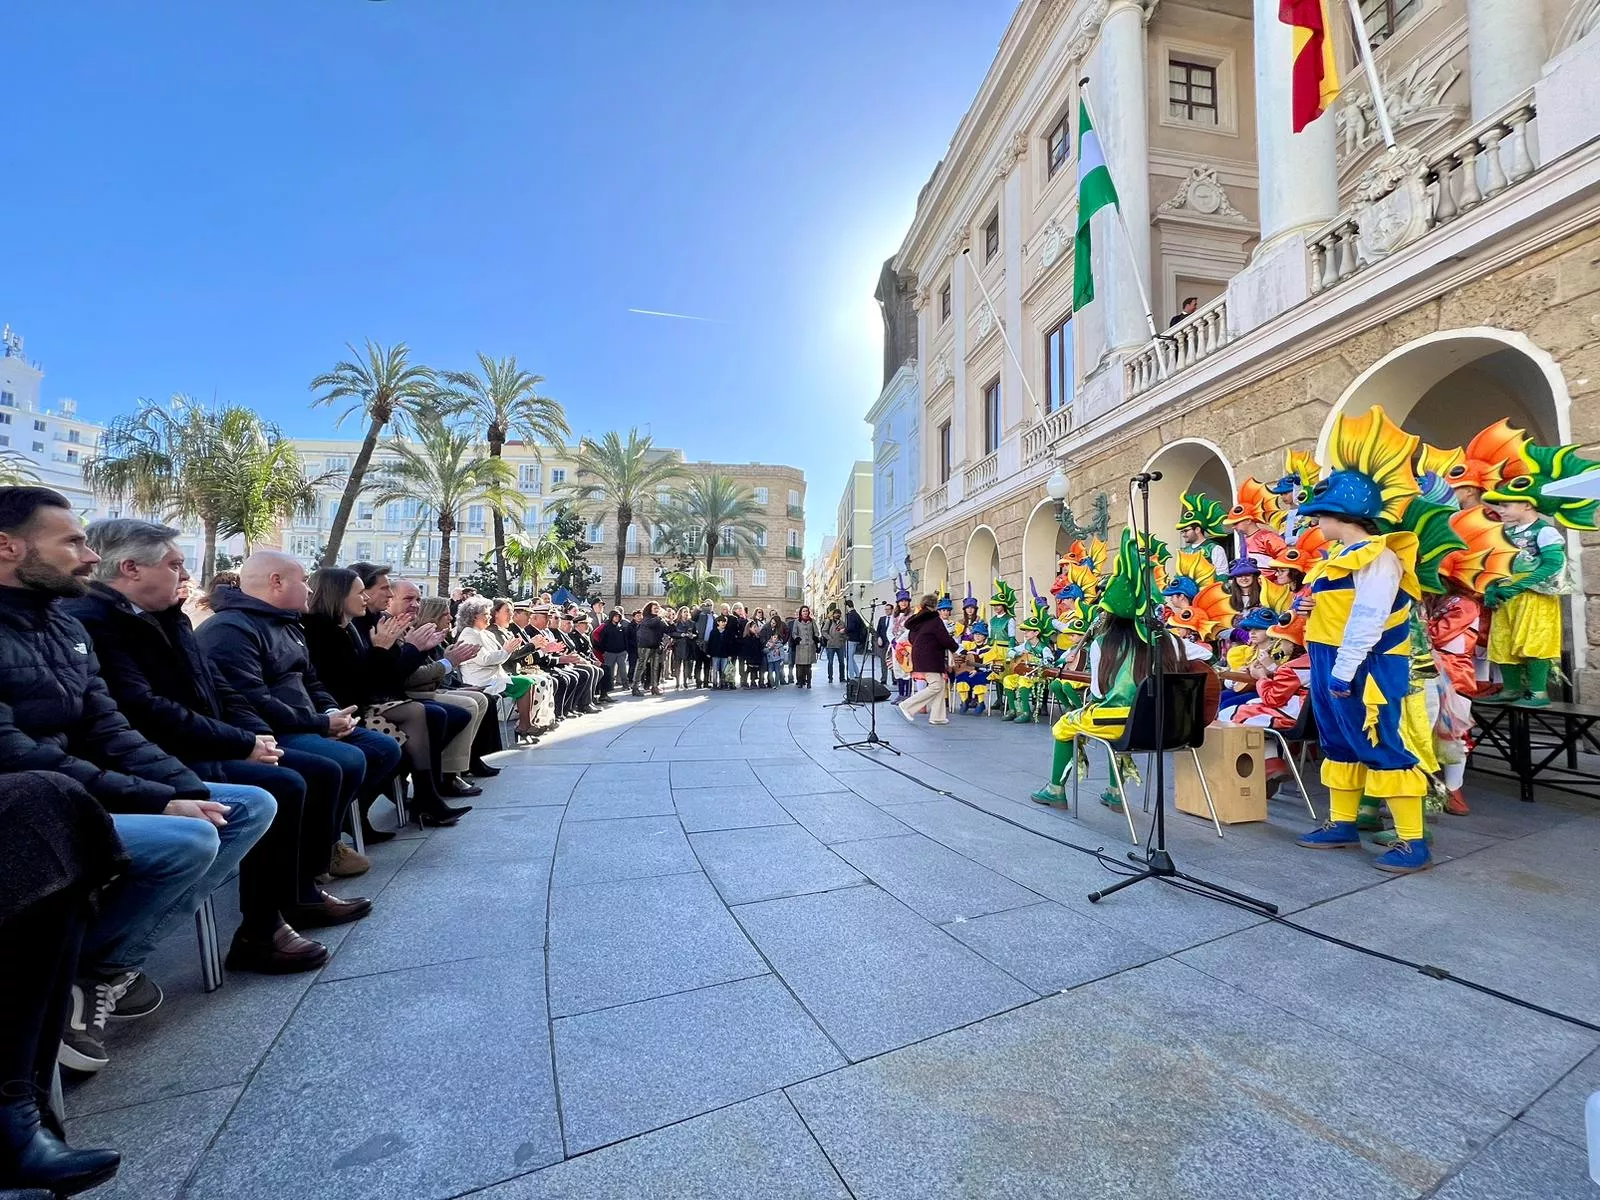 El coro juvenil "La pecera" participó este miércoles en el acto del Día de Andalucía organizado por el Ayuntamiento.